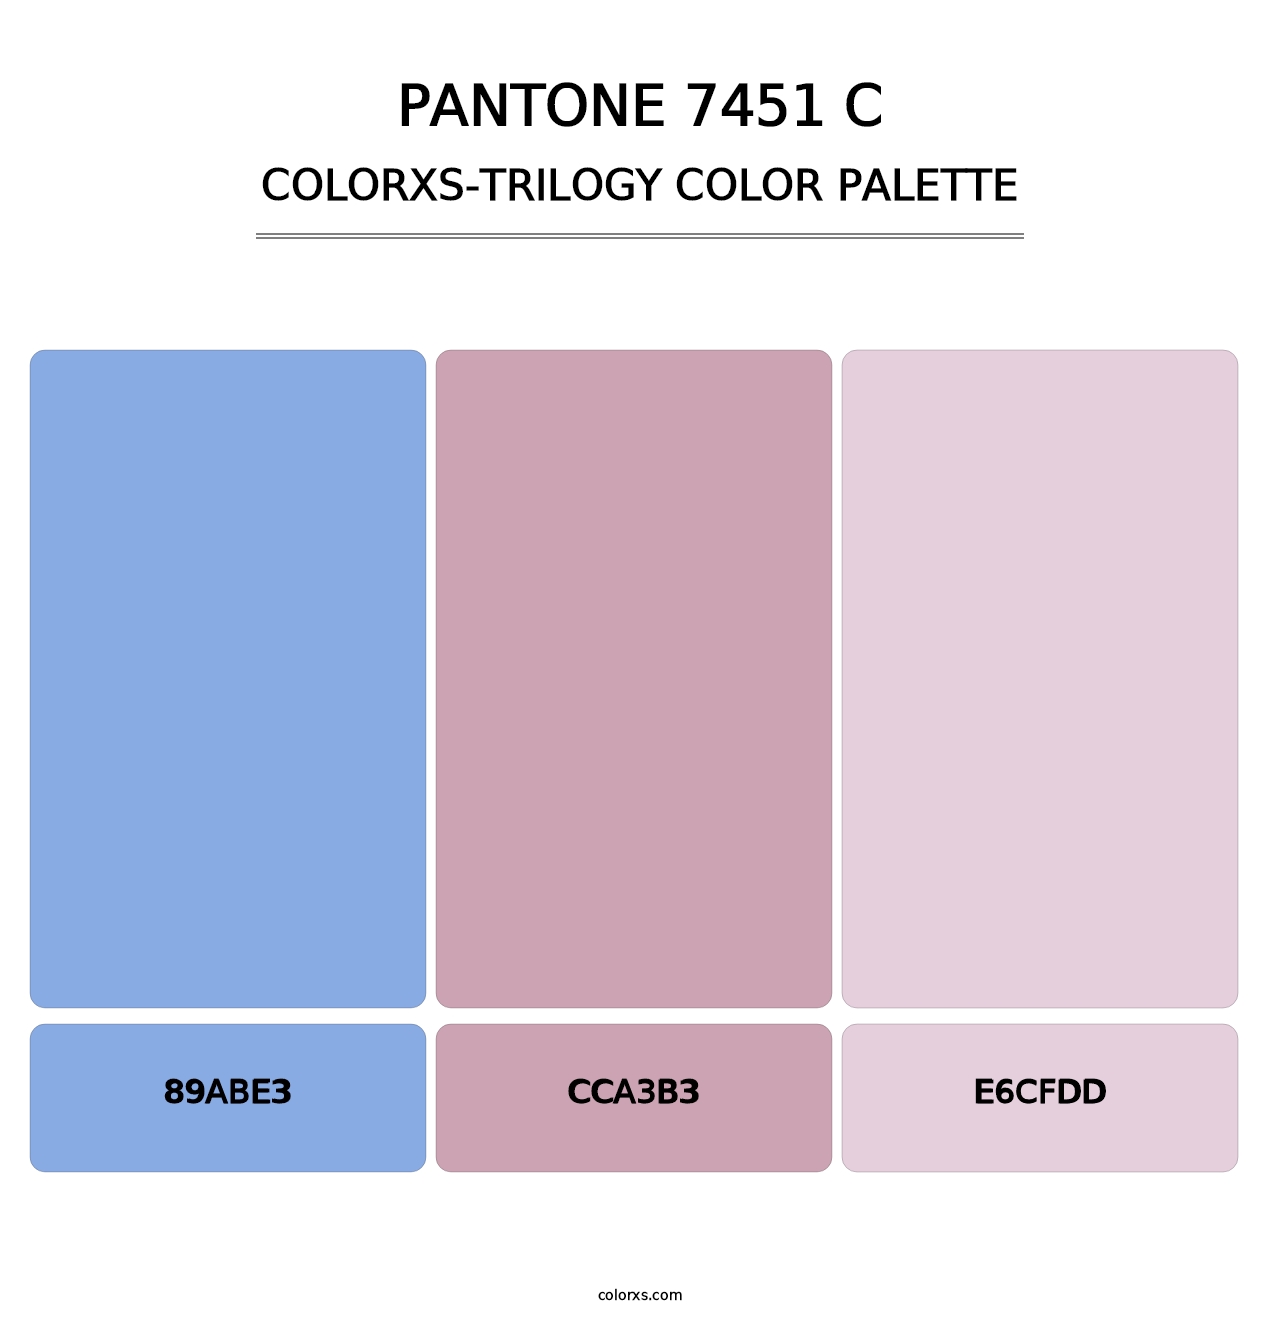 PANTONE 7451 C - Colorxs Trilogy Palette